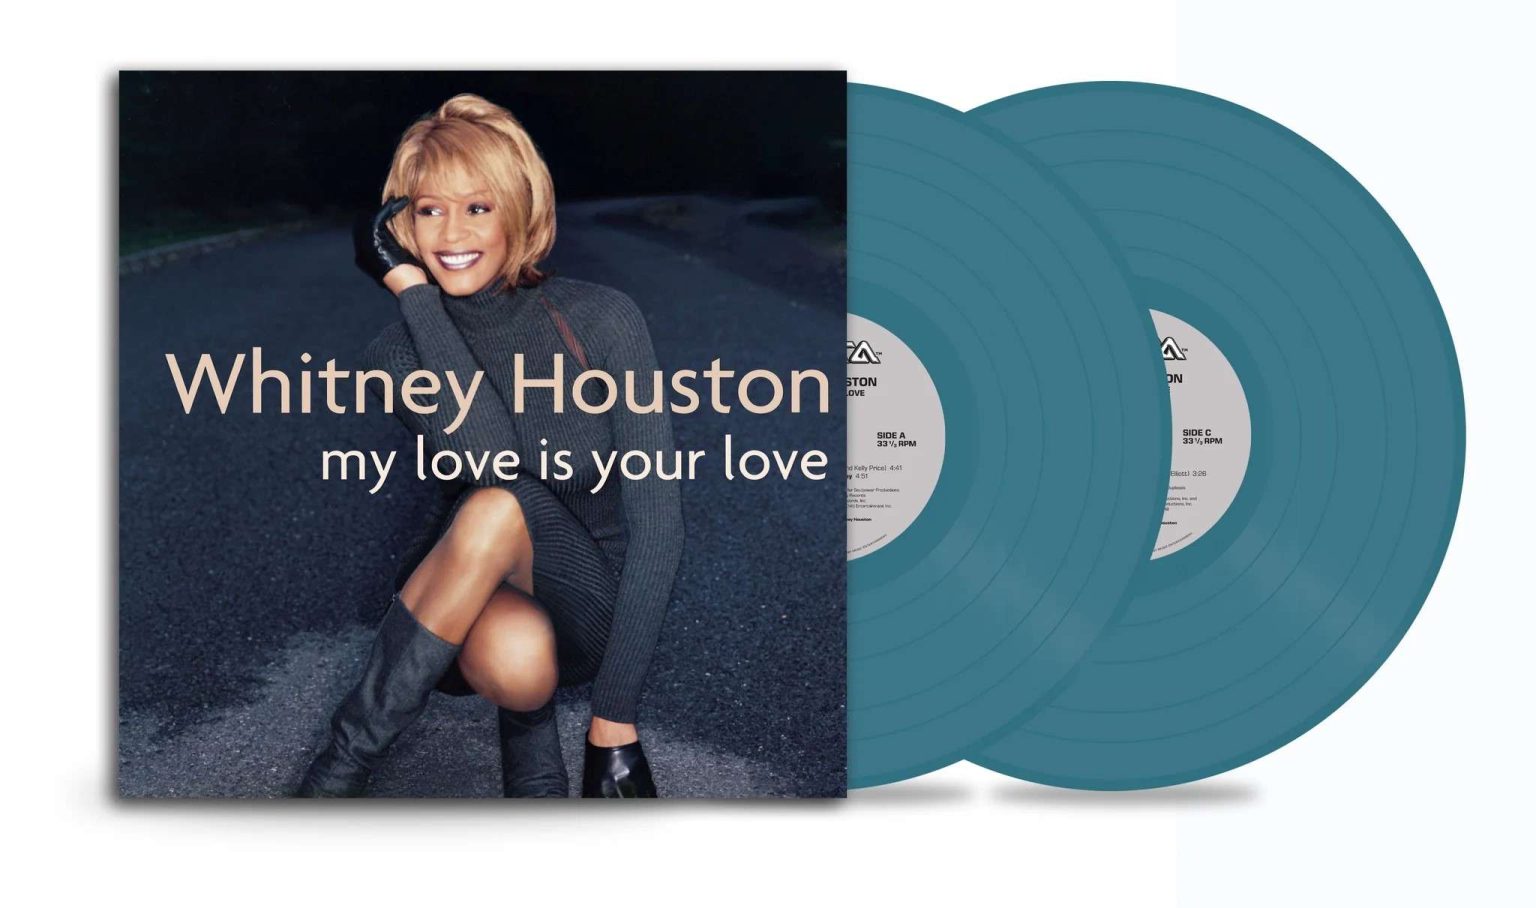 Okładka płyty winylowej artysty Whitney Houston o tytule My Love Is Yor Love